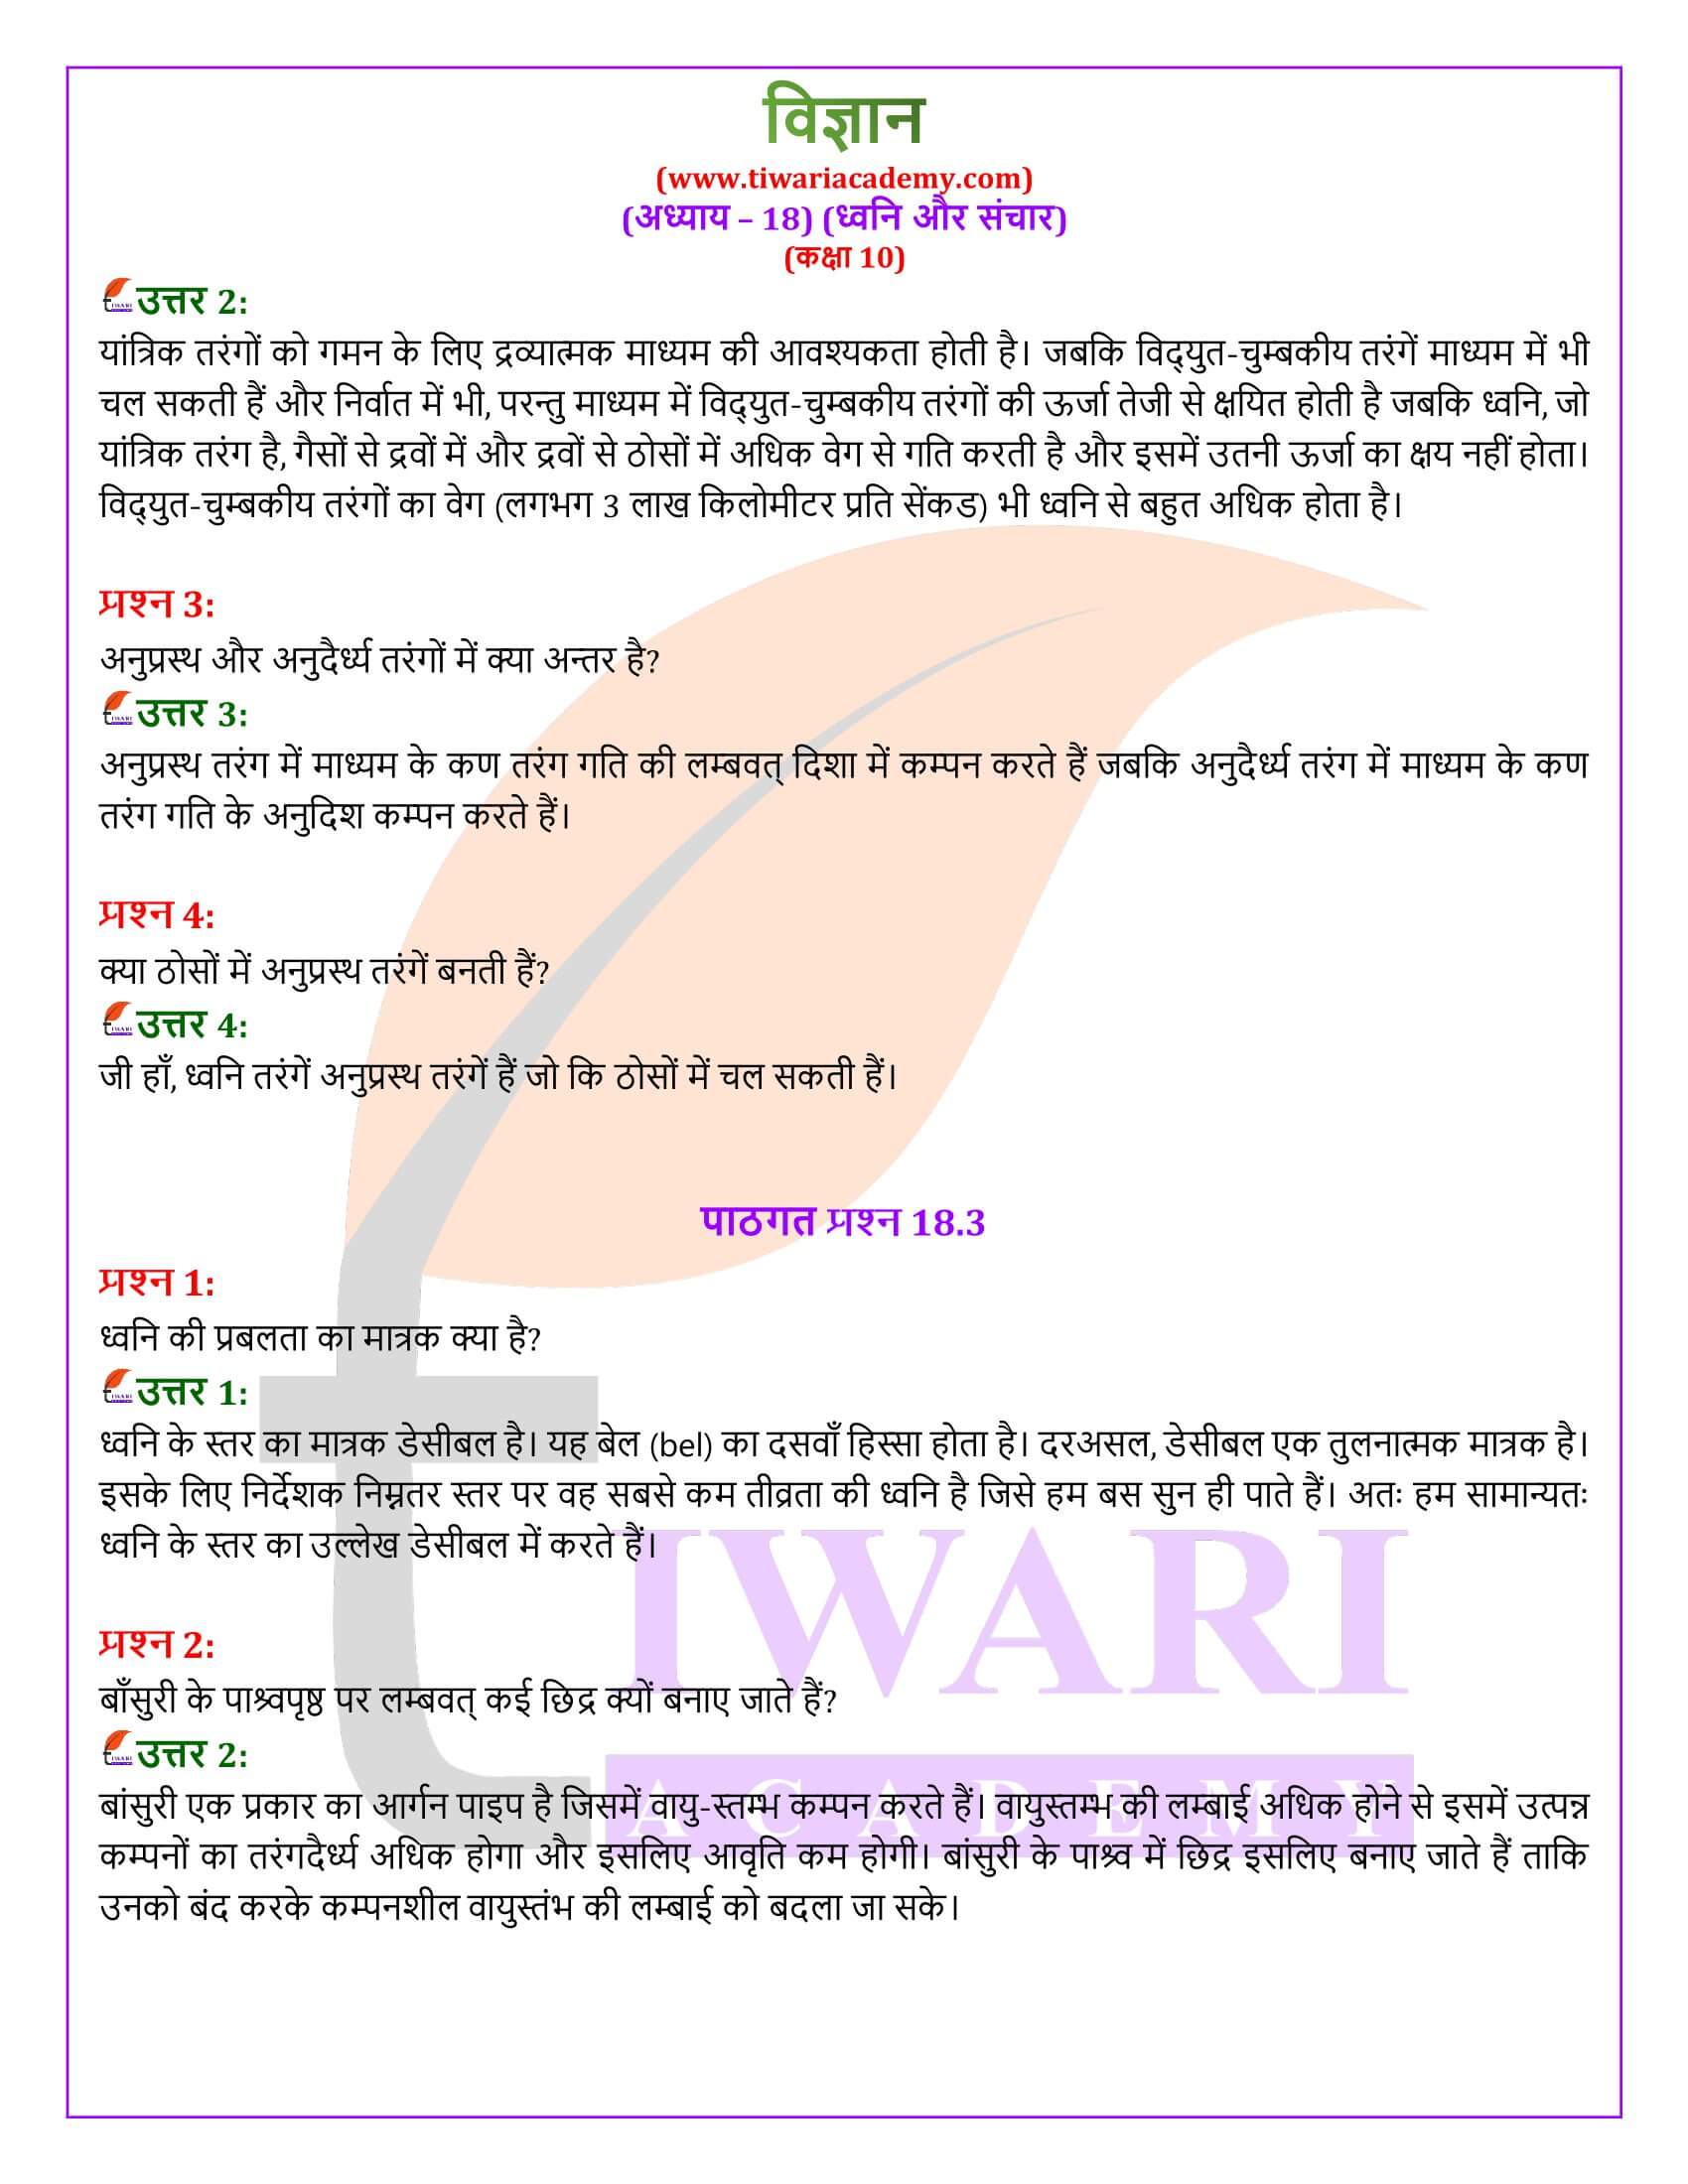 NIOS के लिए कक्षा 10 विज्ञान अध्याय 18 के हल हिंदी में